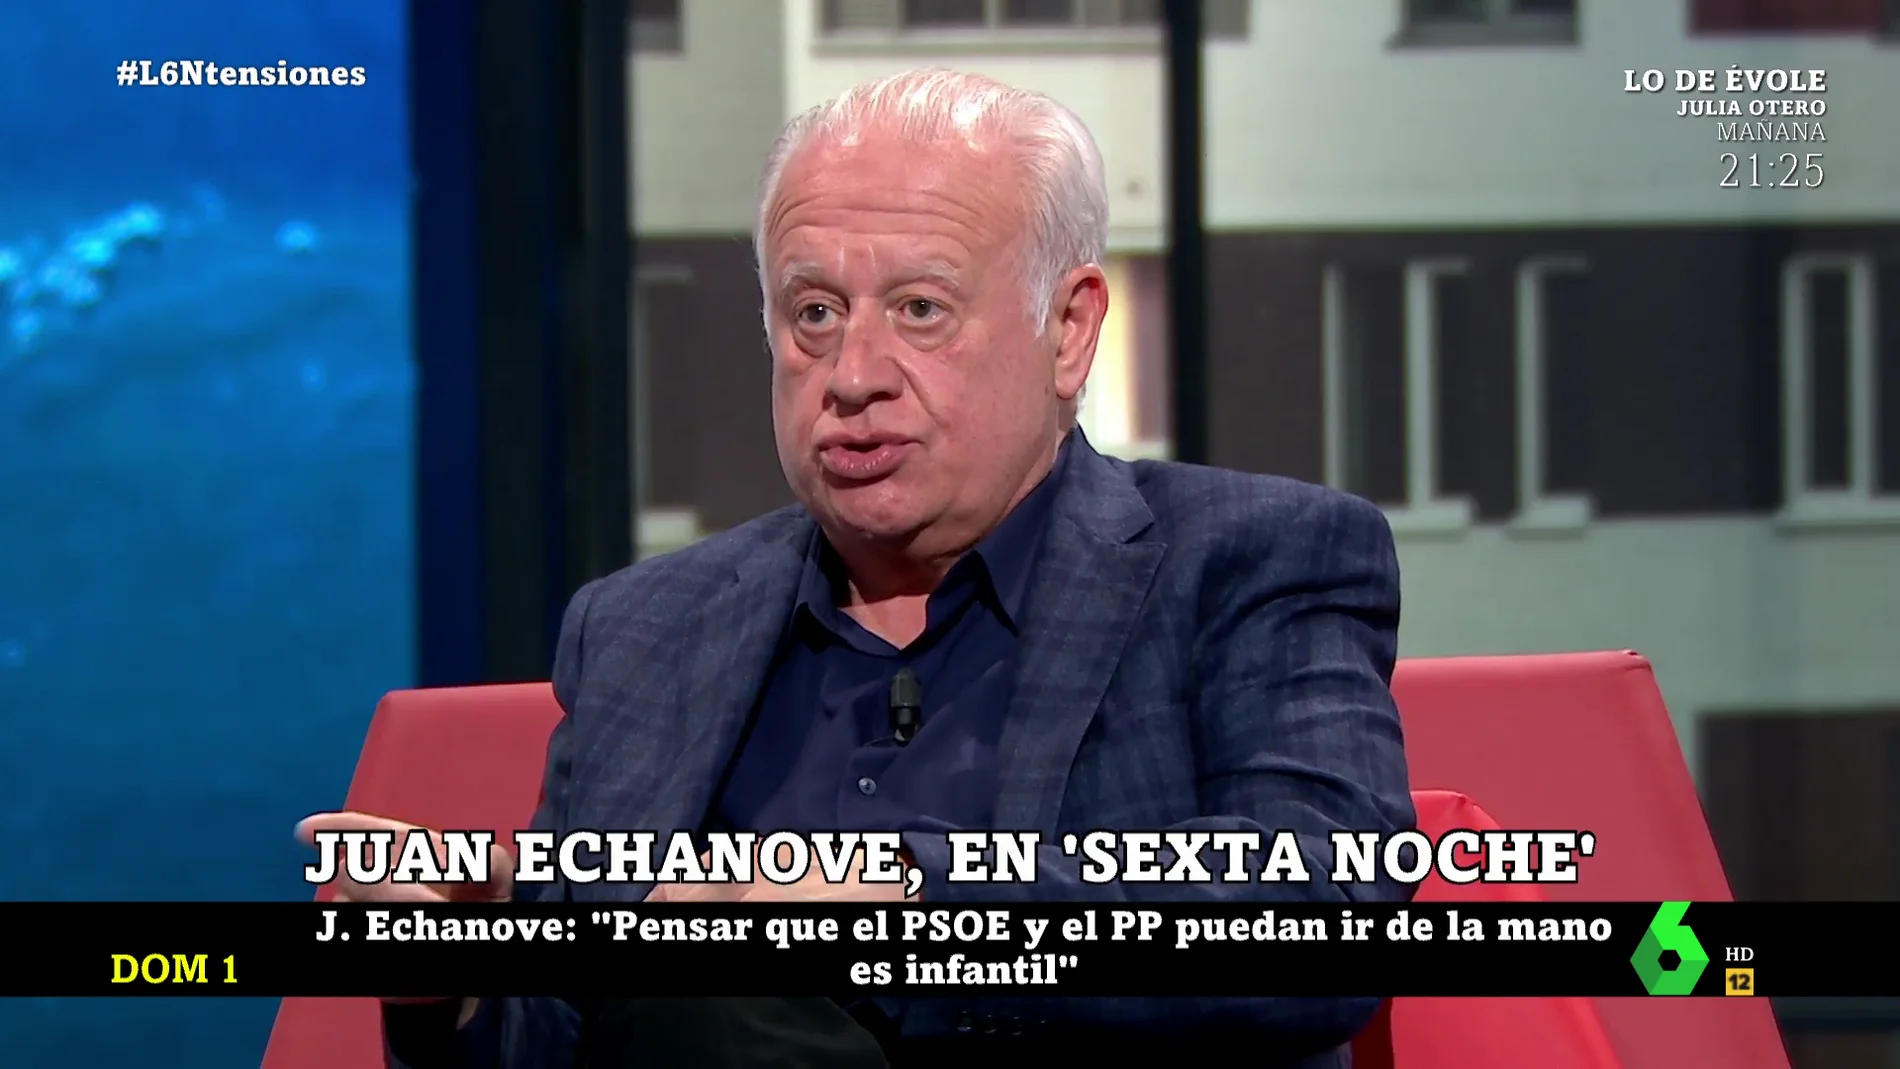 Juan Echanove: "Pensar en que el PSOE y el PP puedan ir de la mano es infantil"